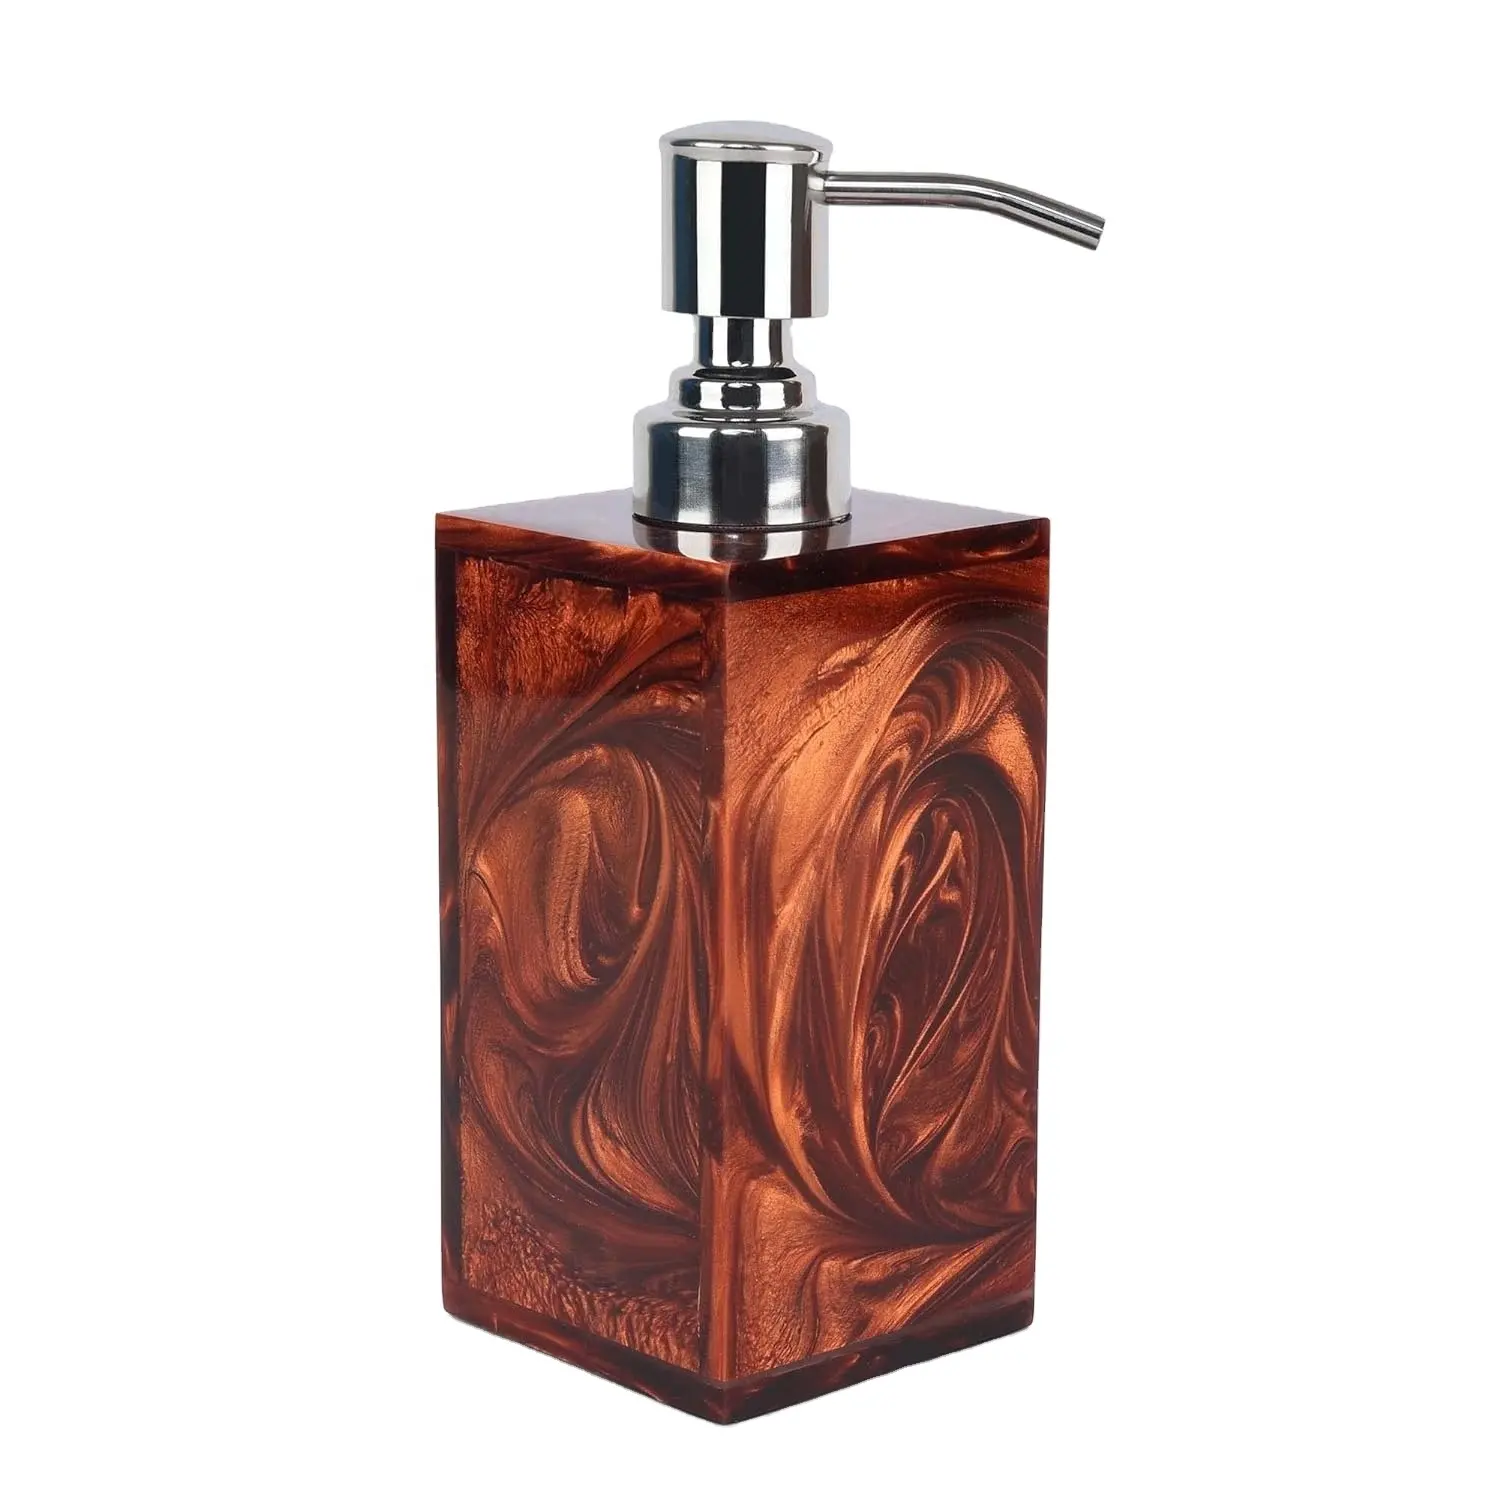 High-Quality Handmade Indian Square Resin Dark Brown Bathroom Soap Dispenser Bottle for Home